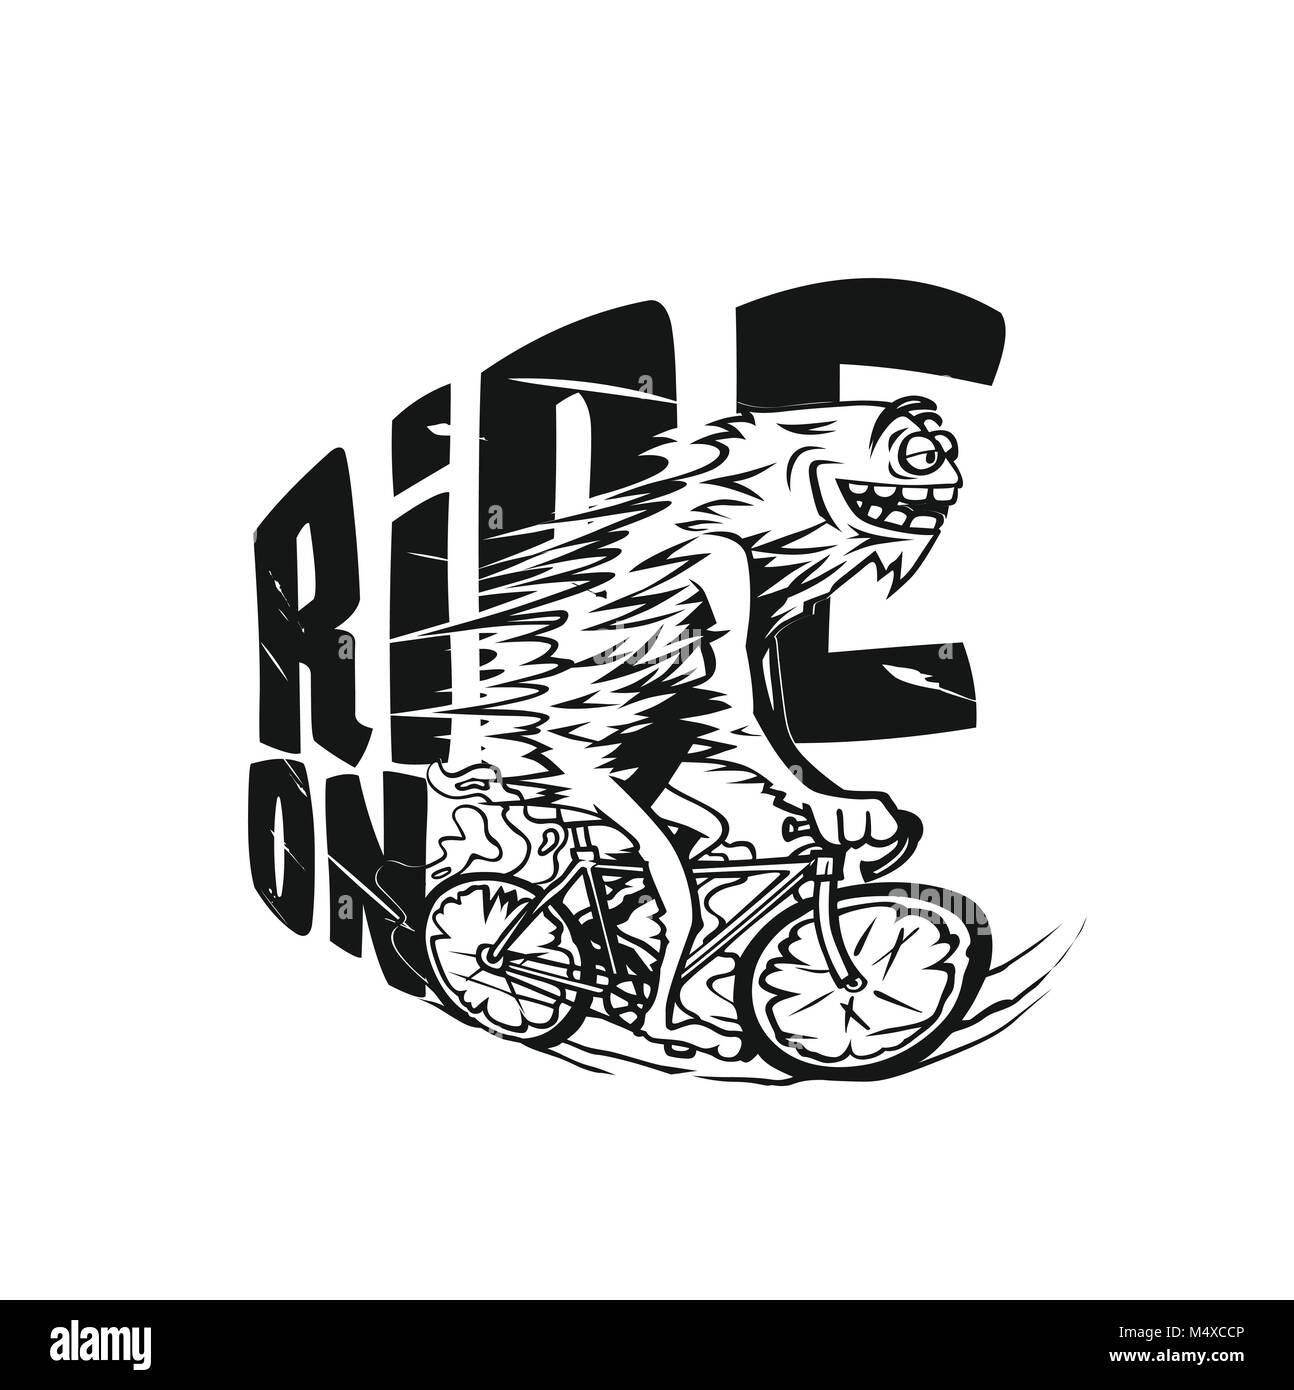 Fahrrad riging Vector Illustration Design. Stock Vektor